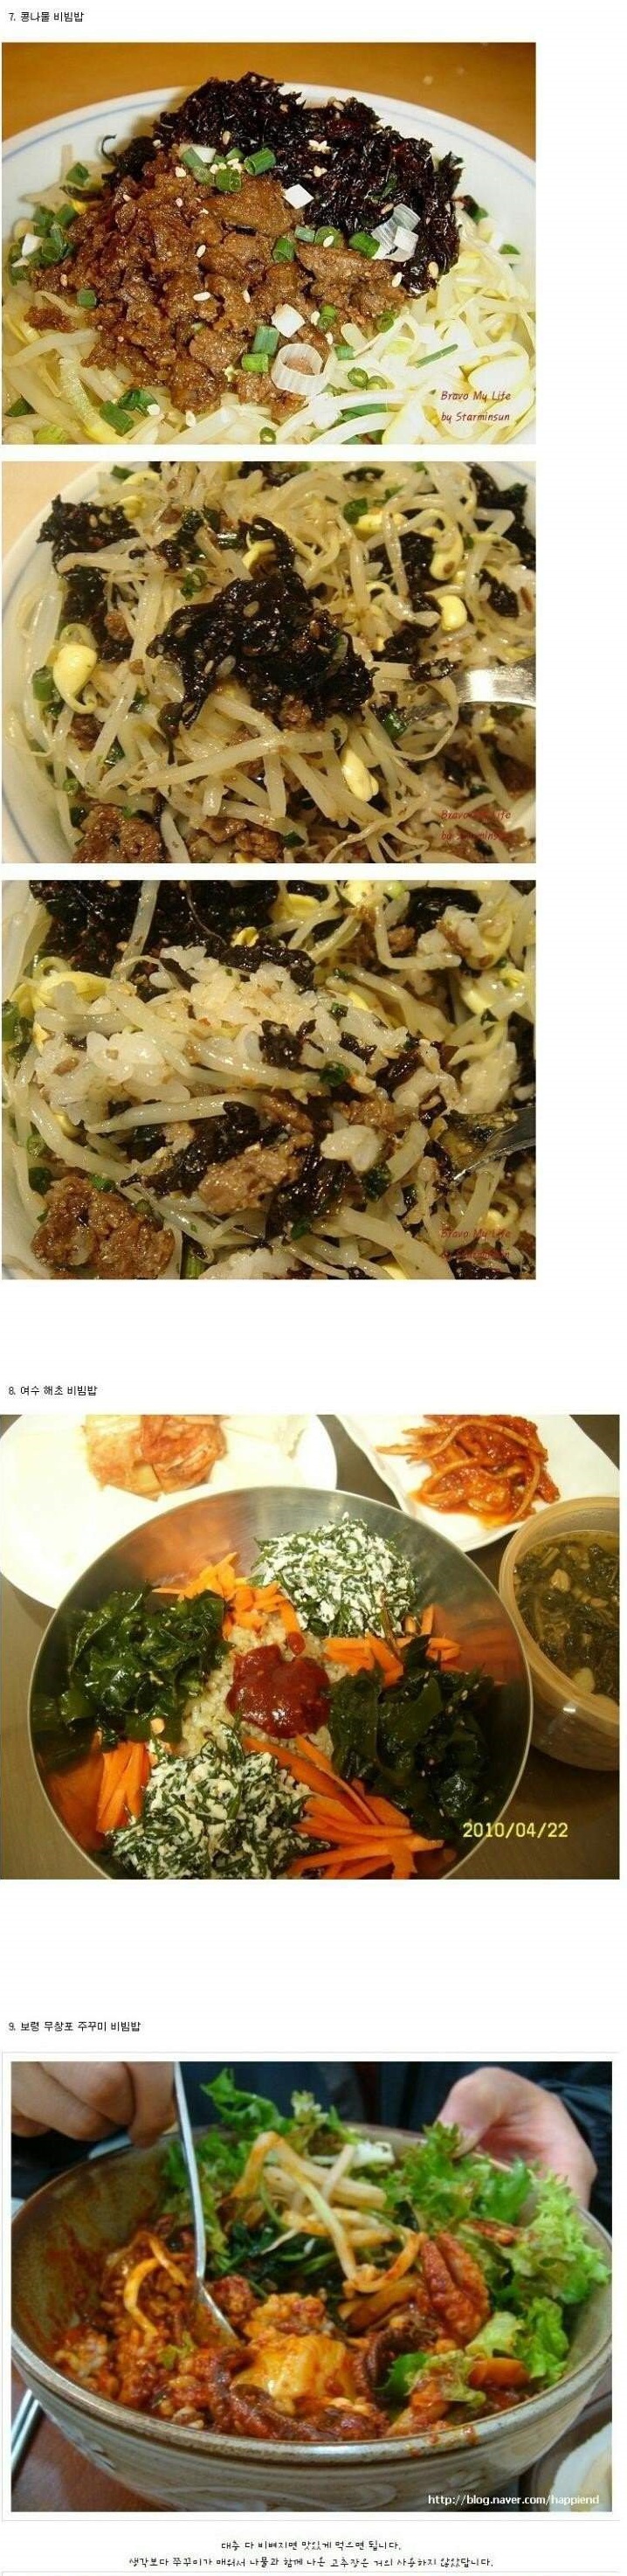 Food - 대한민국 비빔밥 BEST 9 03.jpg